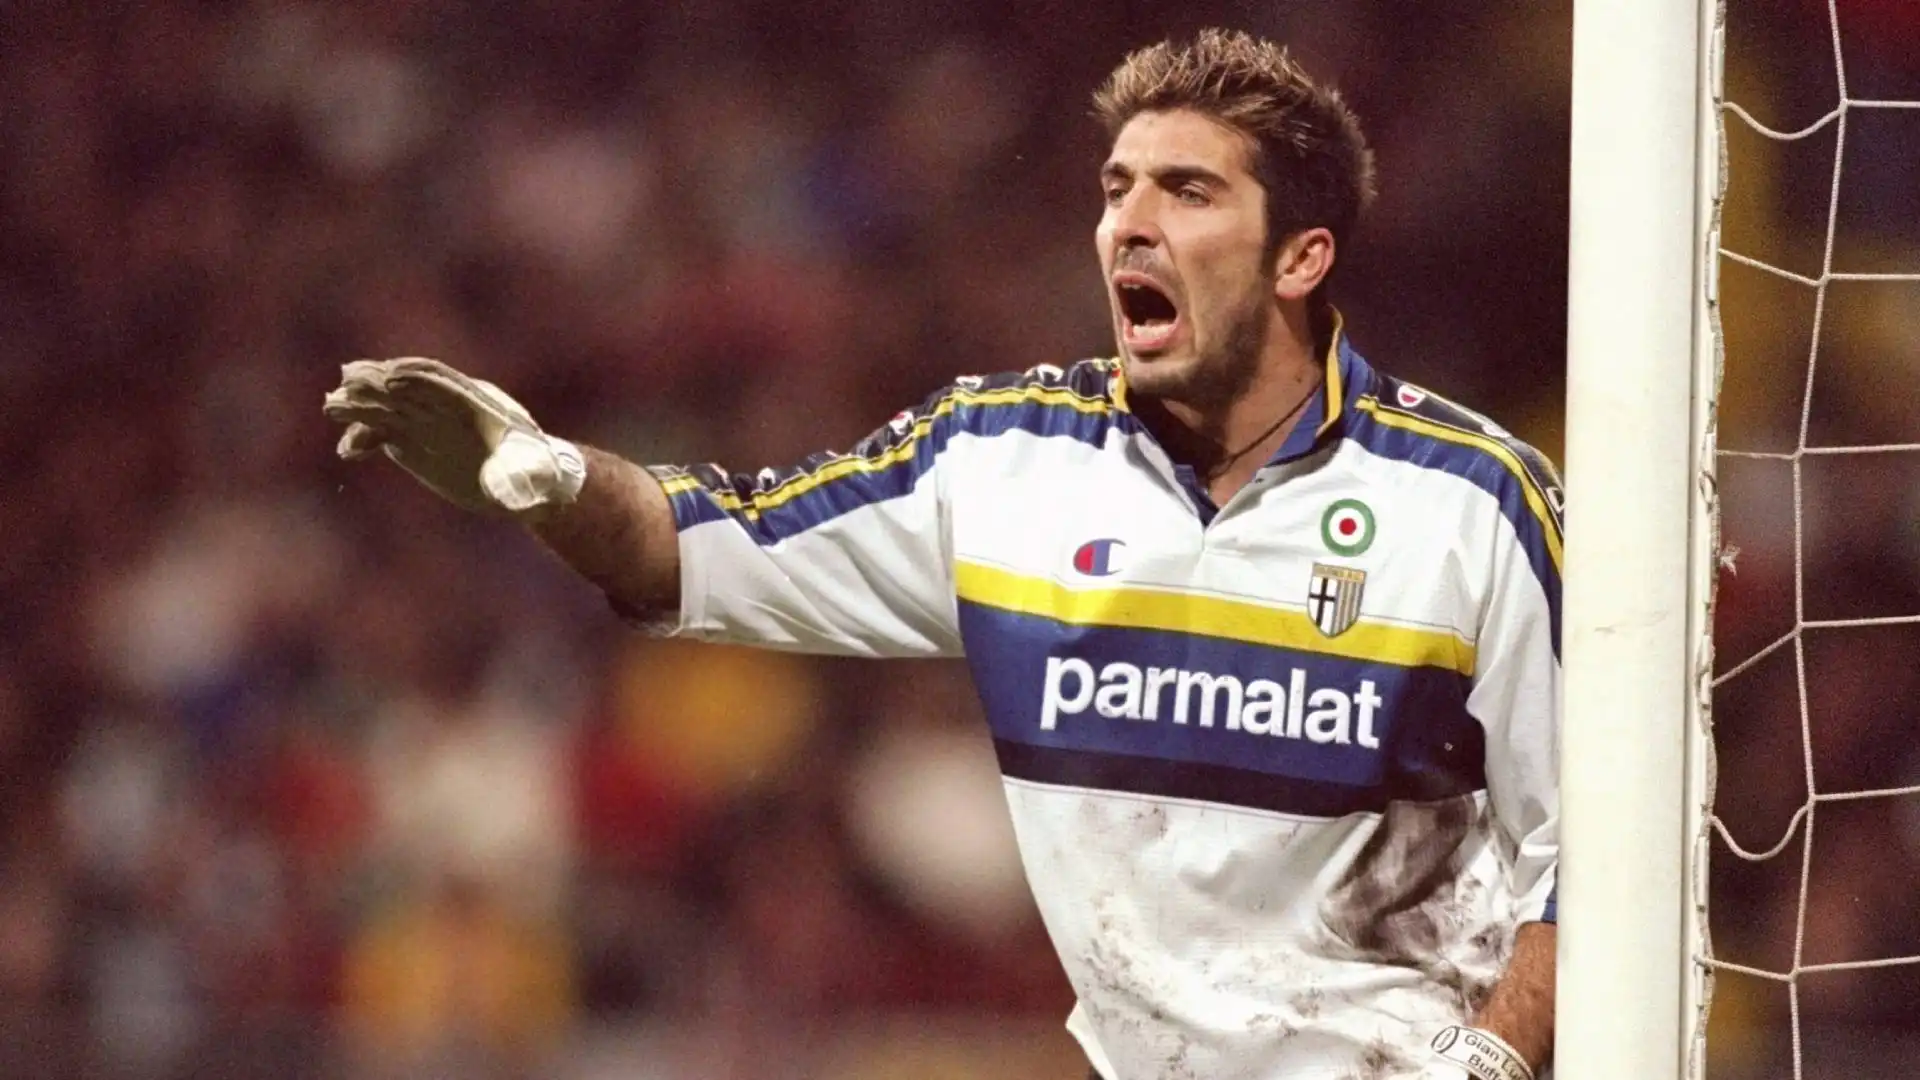 Gianluigi Buffon (Parma): L'azzurro campione del mondo nel 2006, dopo tanti anni di gloria nella Juventus, è recentemente tornato dove ha iniziato, a Parma